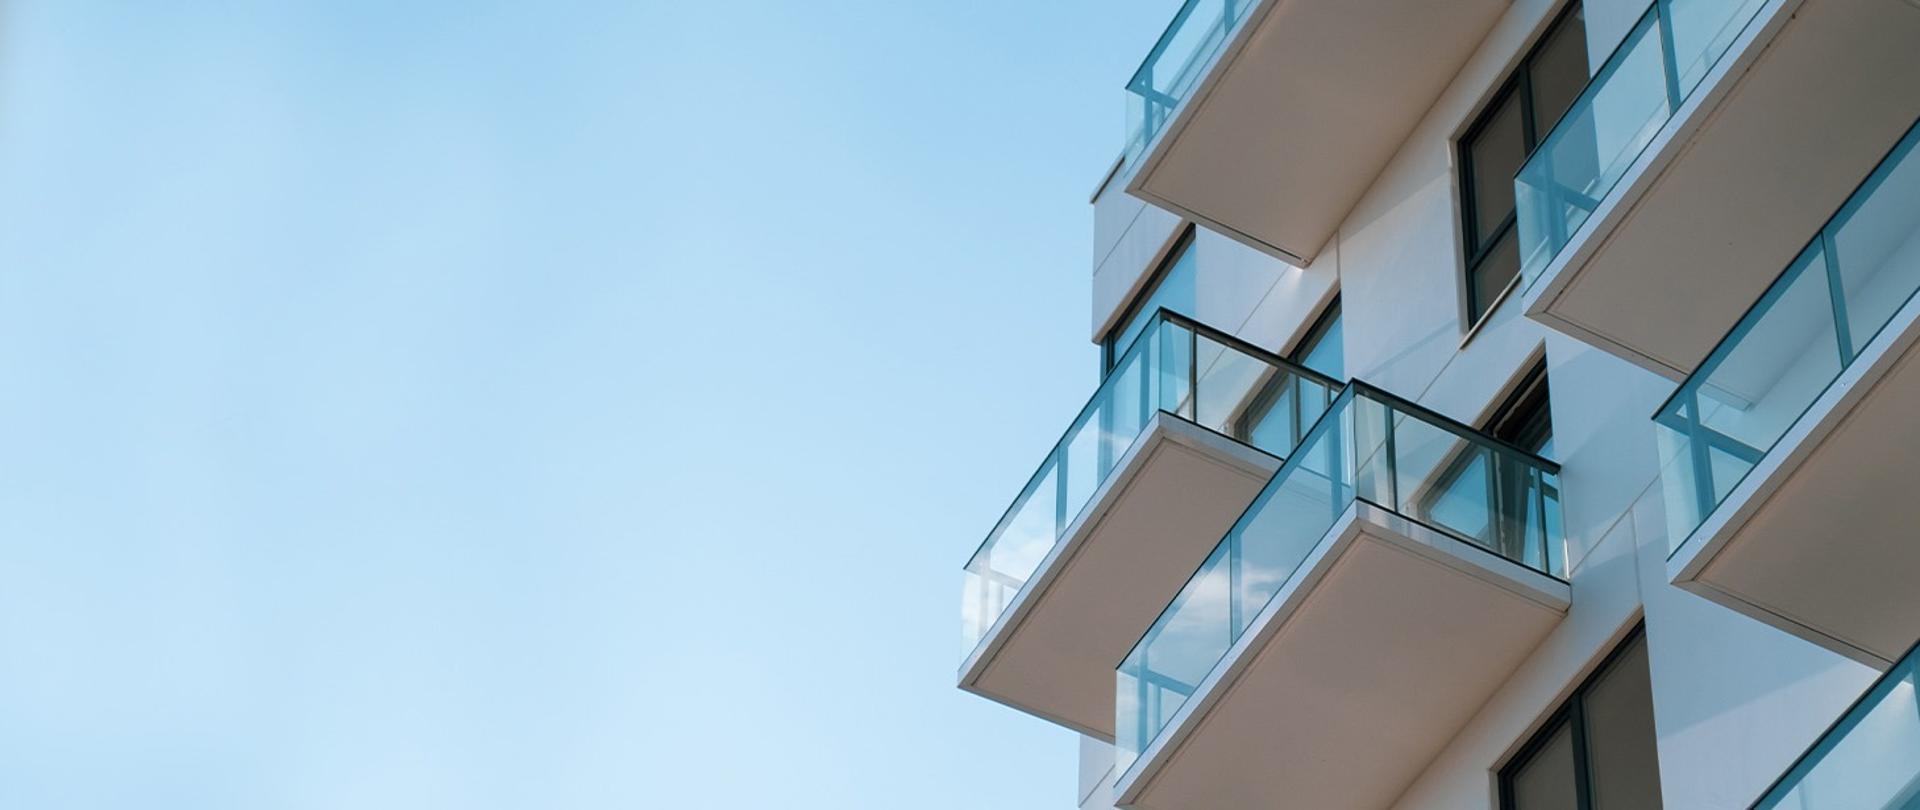 widok na balkony bloku mieszkaniowego